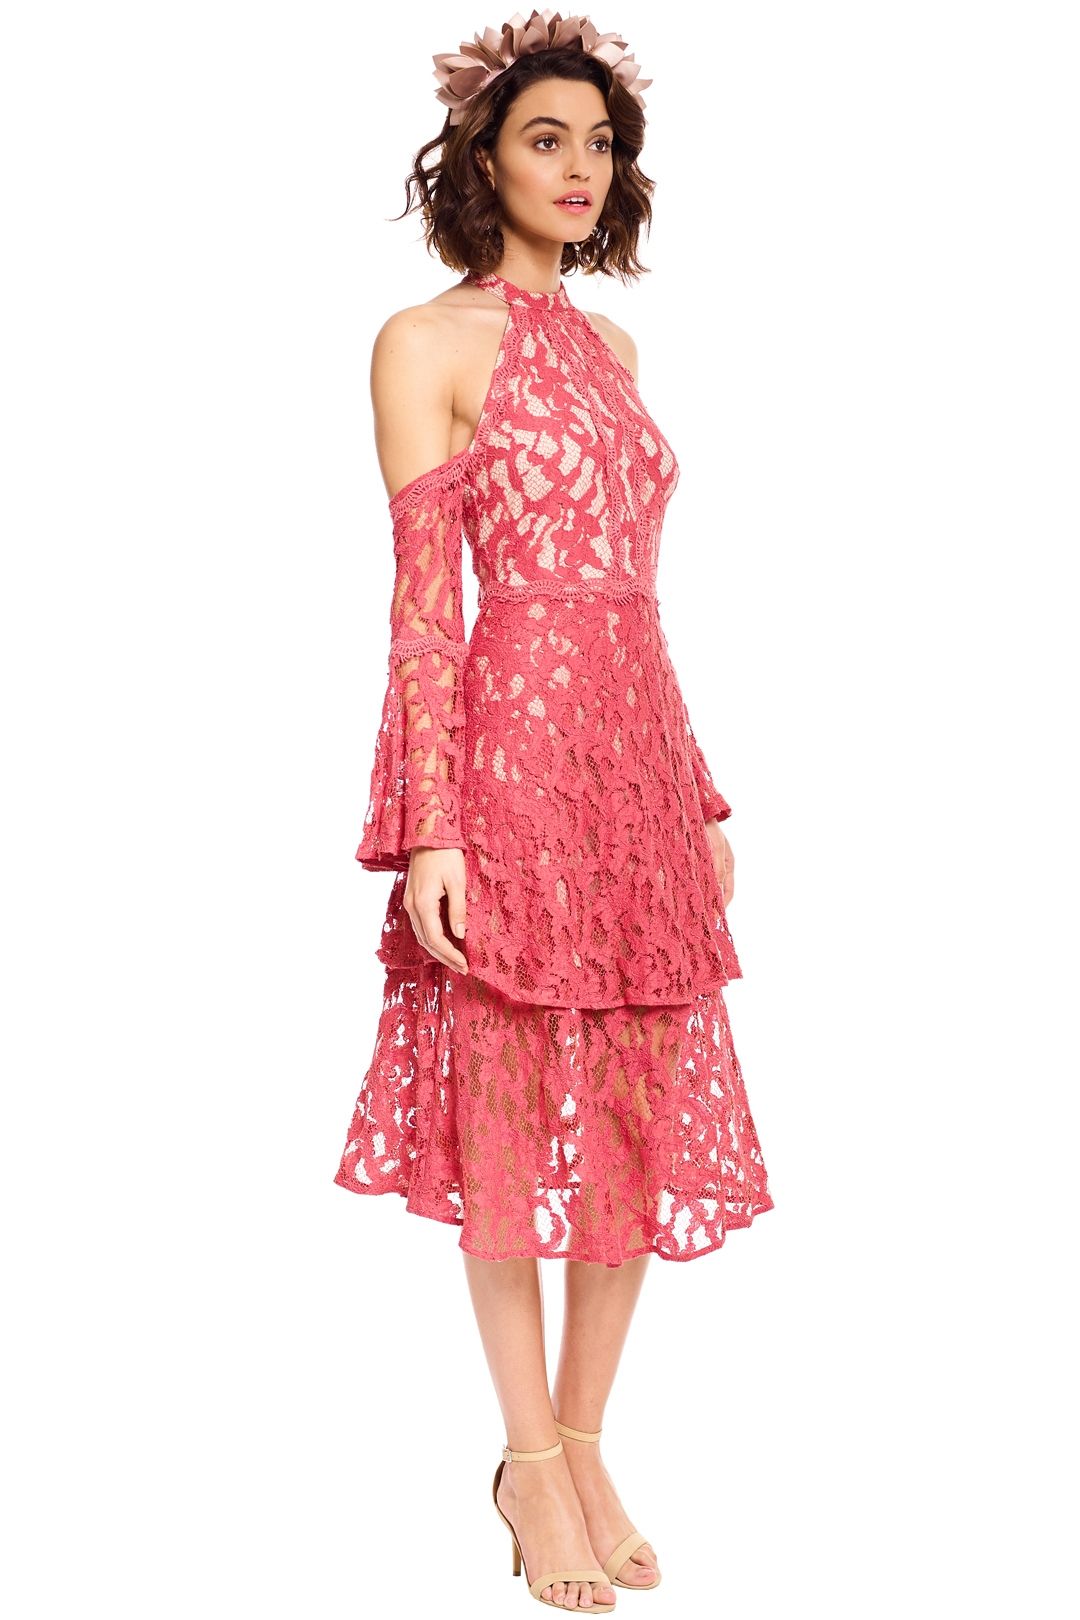 Talulah - Genre Halter Dress - Coral Lace - Side